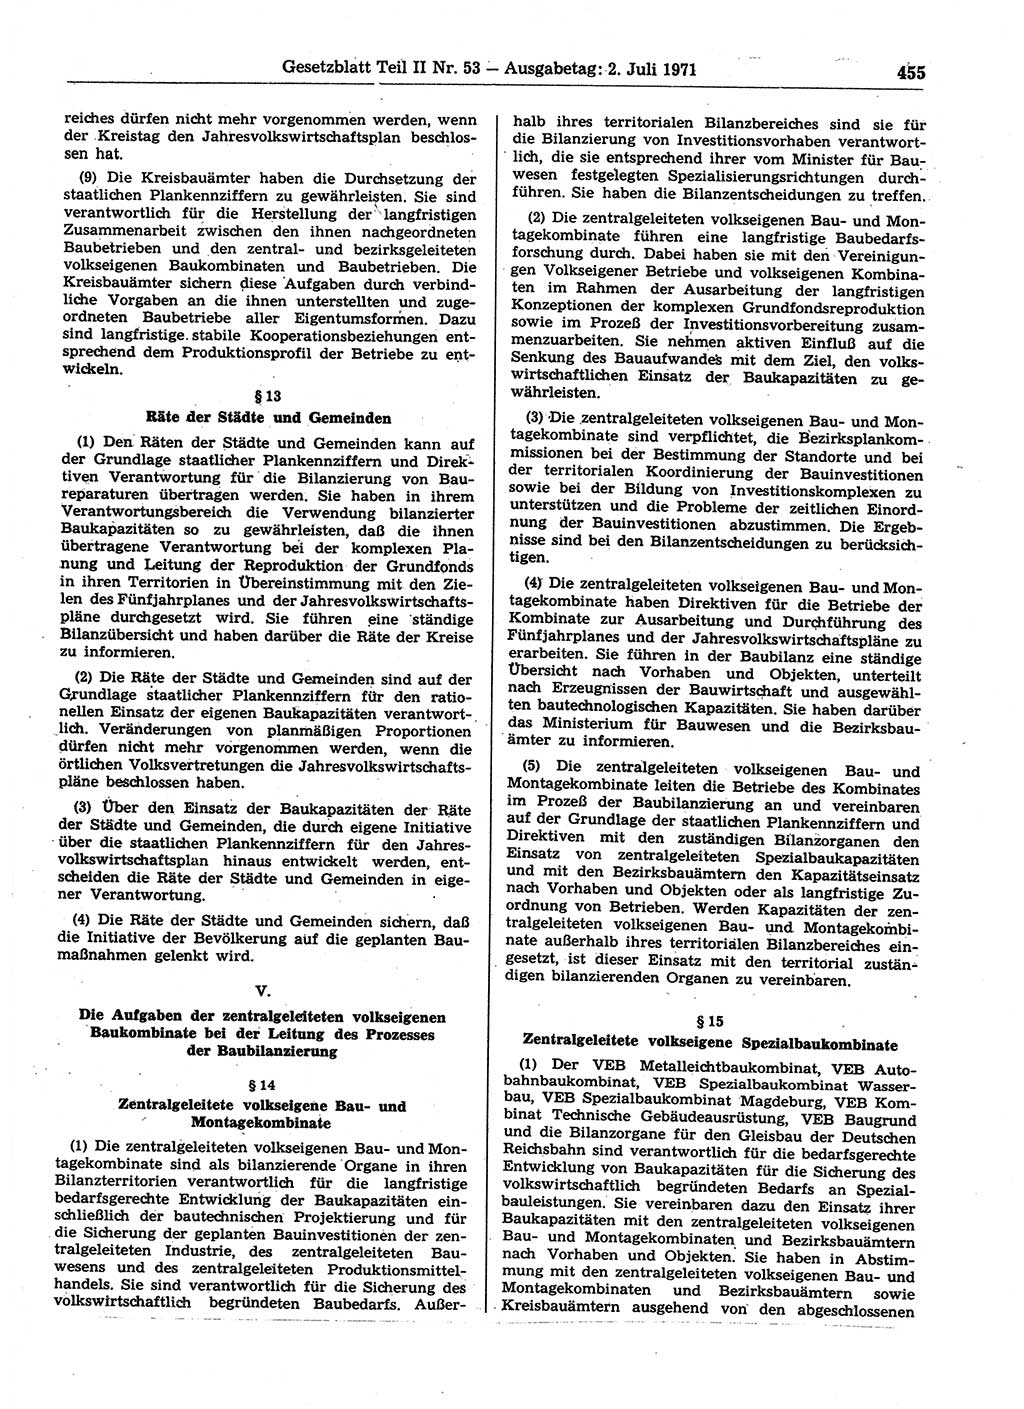 Gesetzblatt (GBl.) der Deutschen Demokratischen Republik (DDR) Teil ⅠⅠ 1971, Seite 455 (GBl. DDR ⅠⅠ 1971, S. 455)